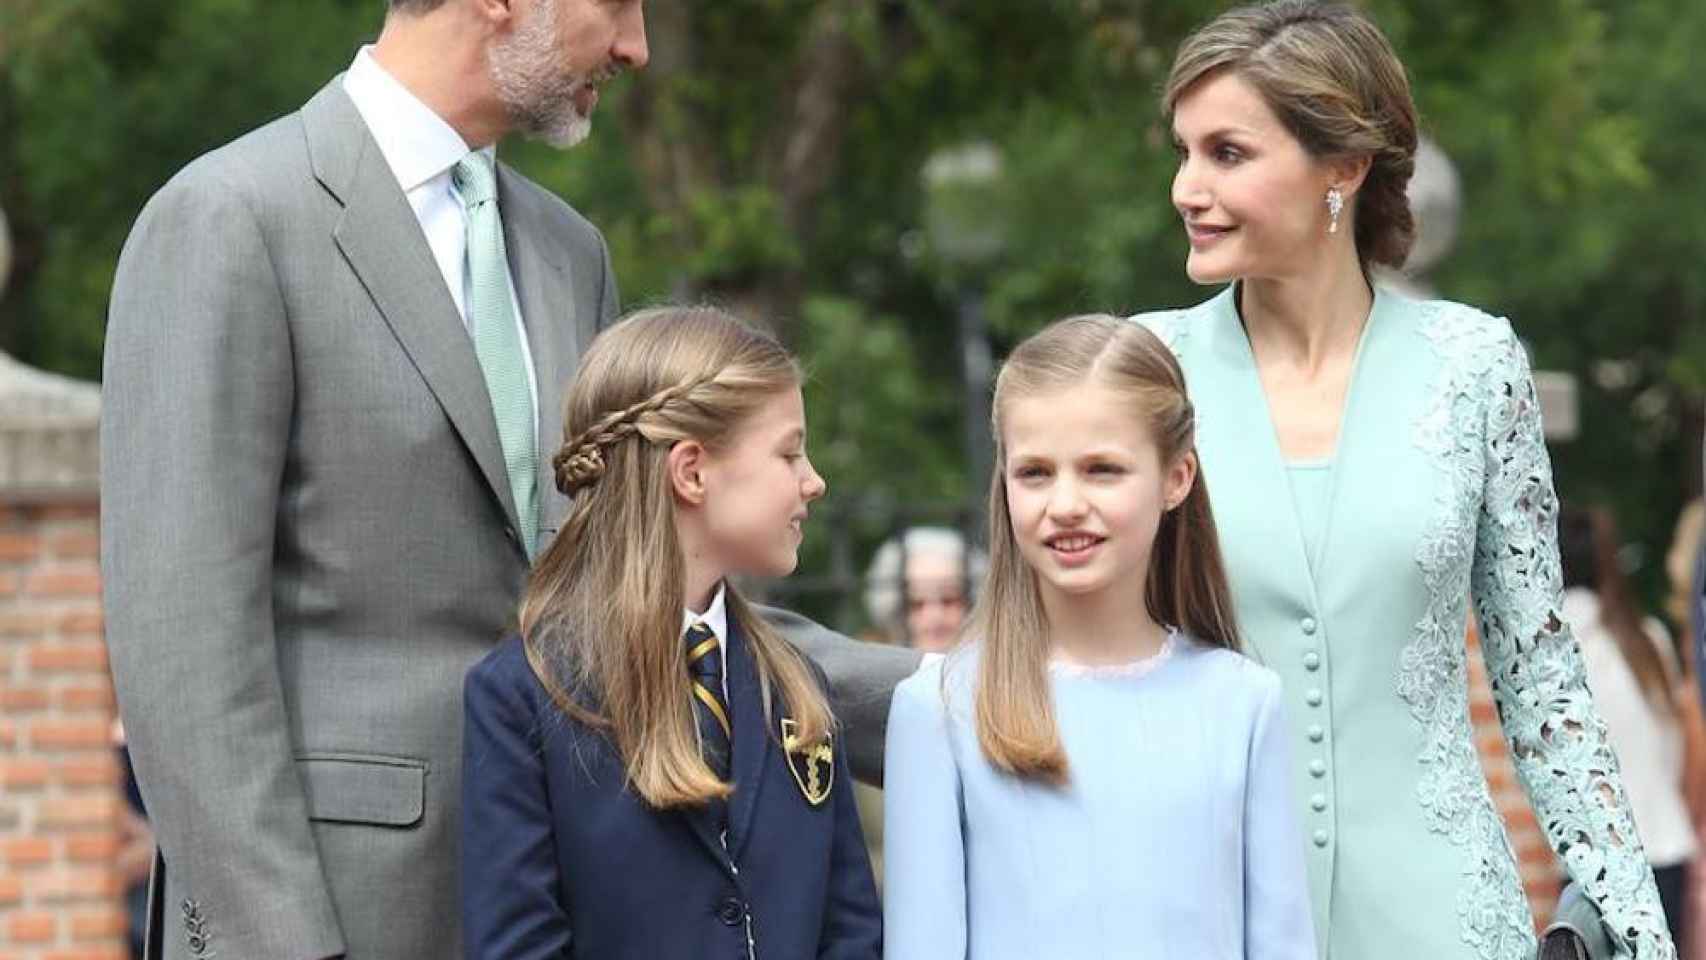 La infanta Sofía celebra comunión y Letizia repite vestido